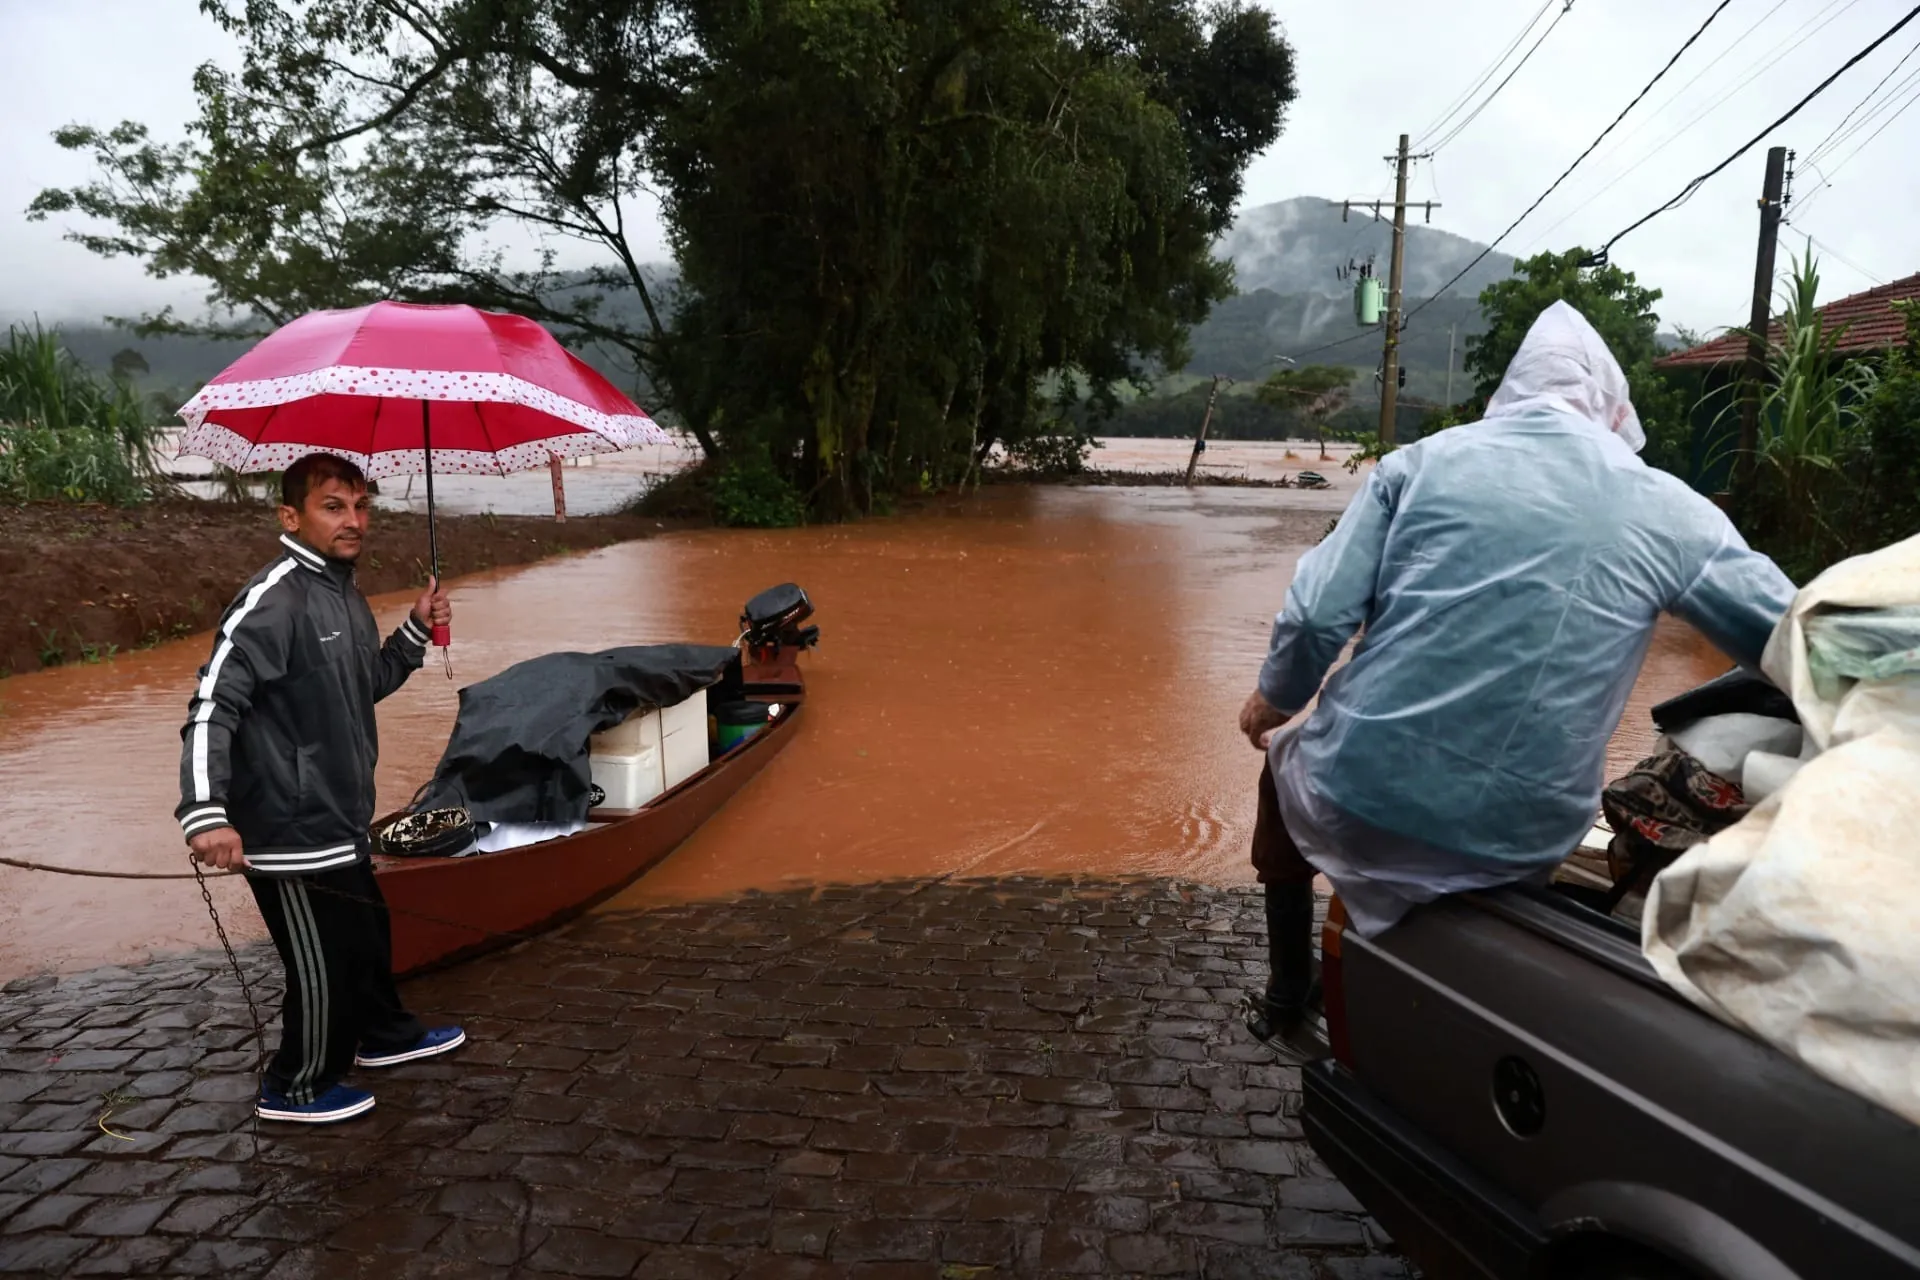 Muita gente apavorada: Moradora relata aflição ao ver sua casa inundada pelas chuvas no RS